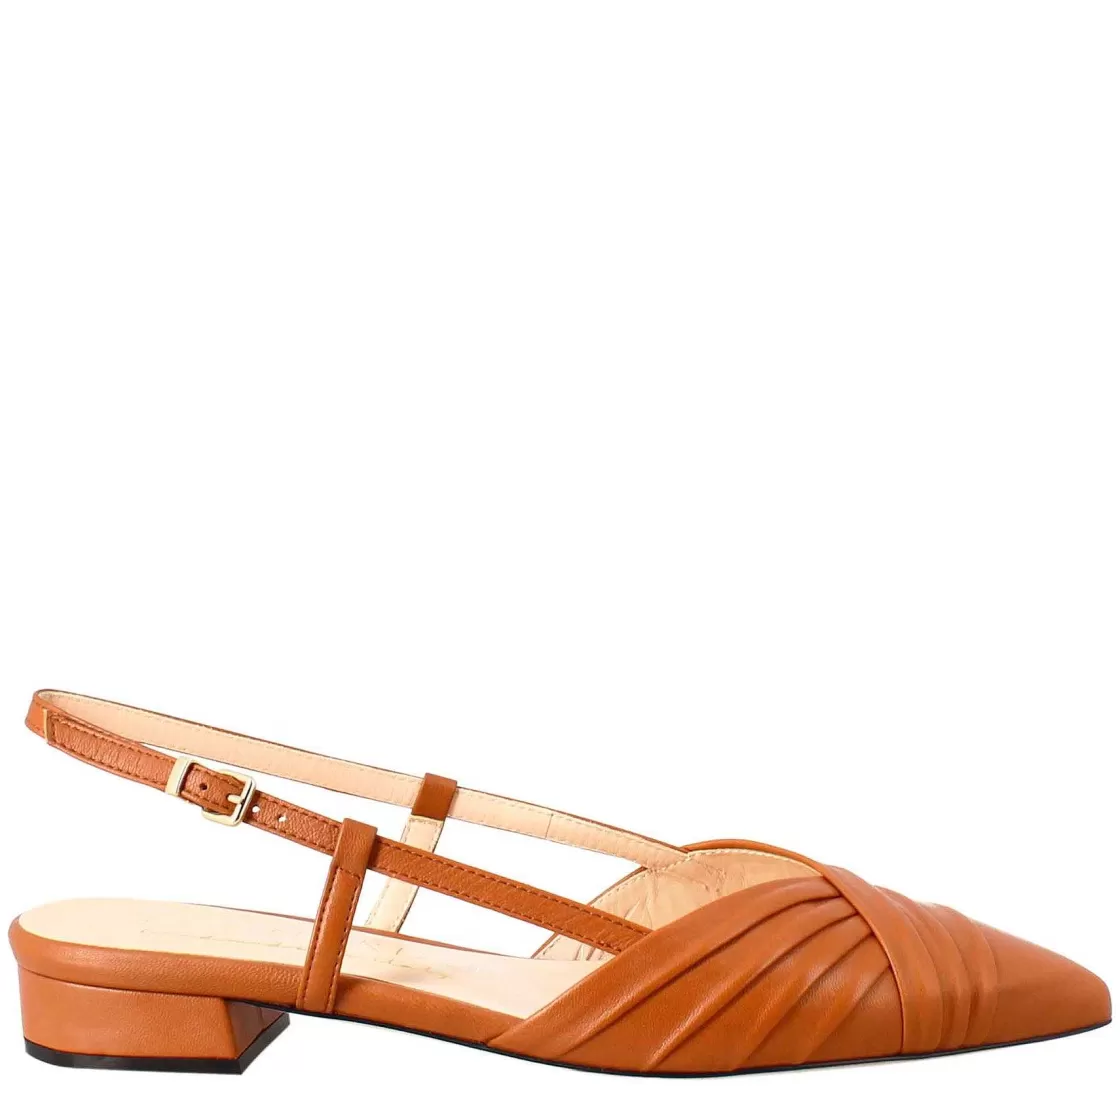 Leonardo Woman'S Pointed Toe Medium Heel Closed Sandal In Brown Pleated Leather Sale